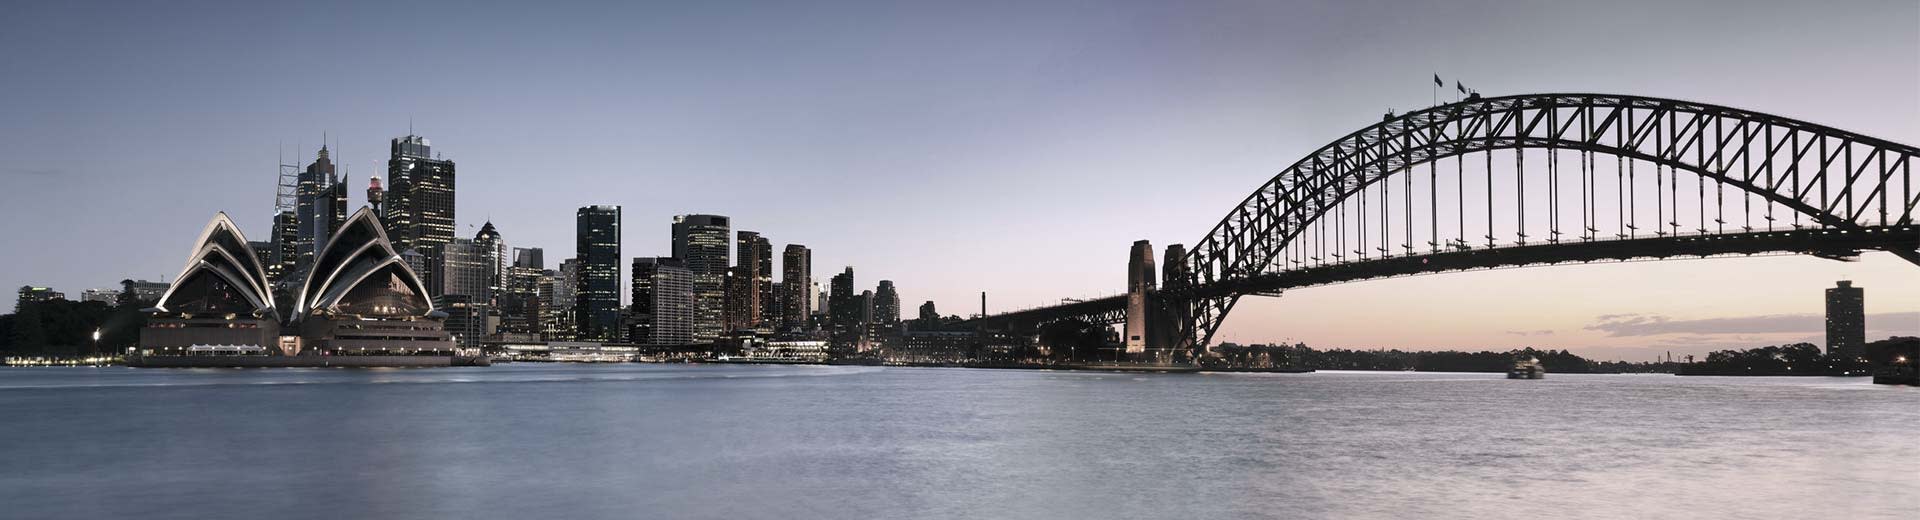 闻名遐迩的悉尼歌剧院是这一场景的主景，右侧是多座建筑和悉尼大桥。